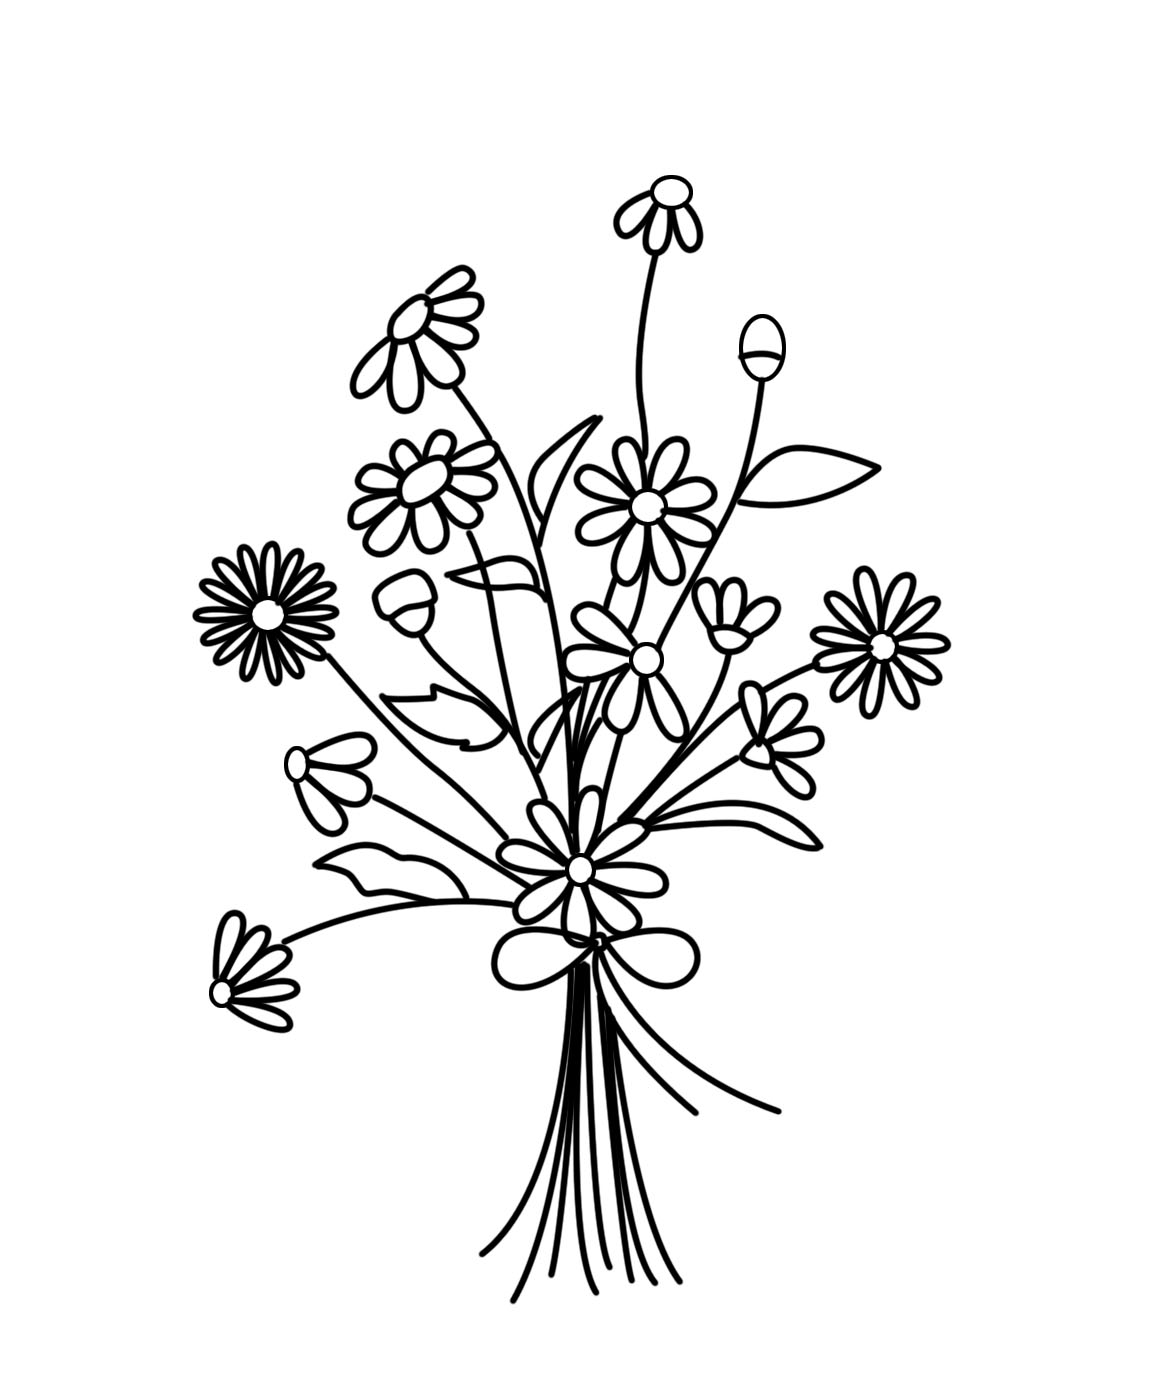 Cách vẽ hoa cúc họa mi đơn giản tuyệt vời nhất, cách vẽ cúc hoạ mi ...